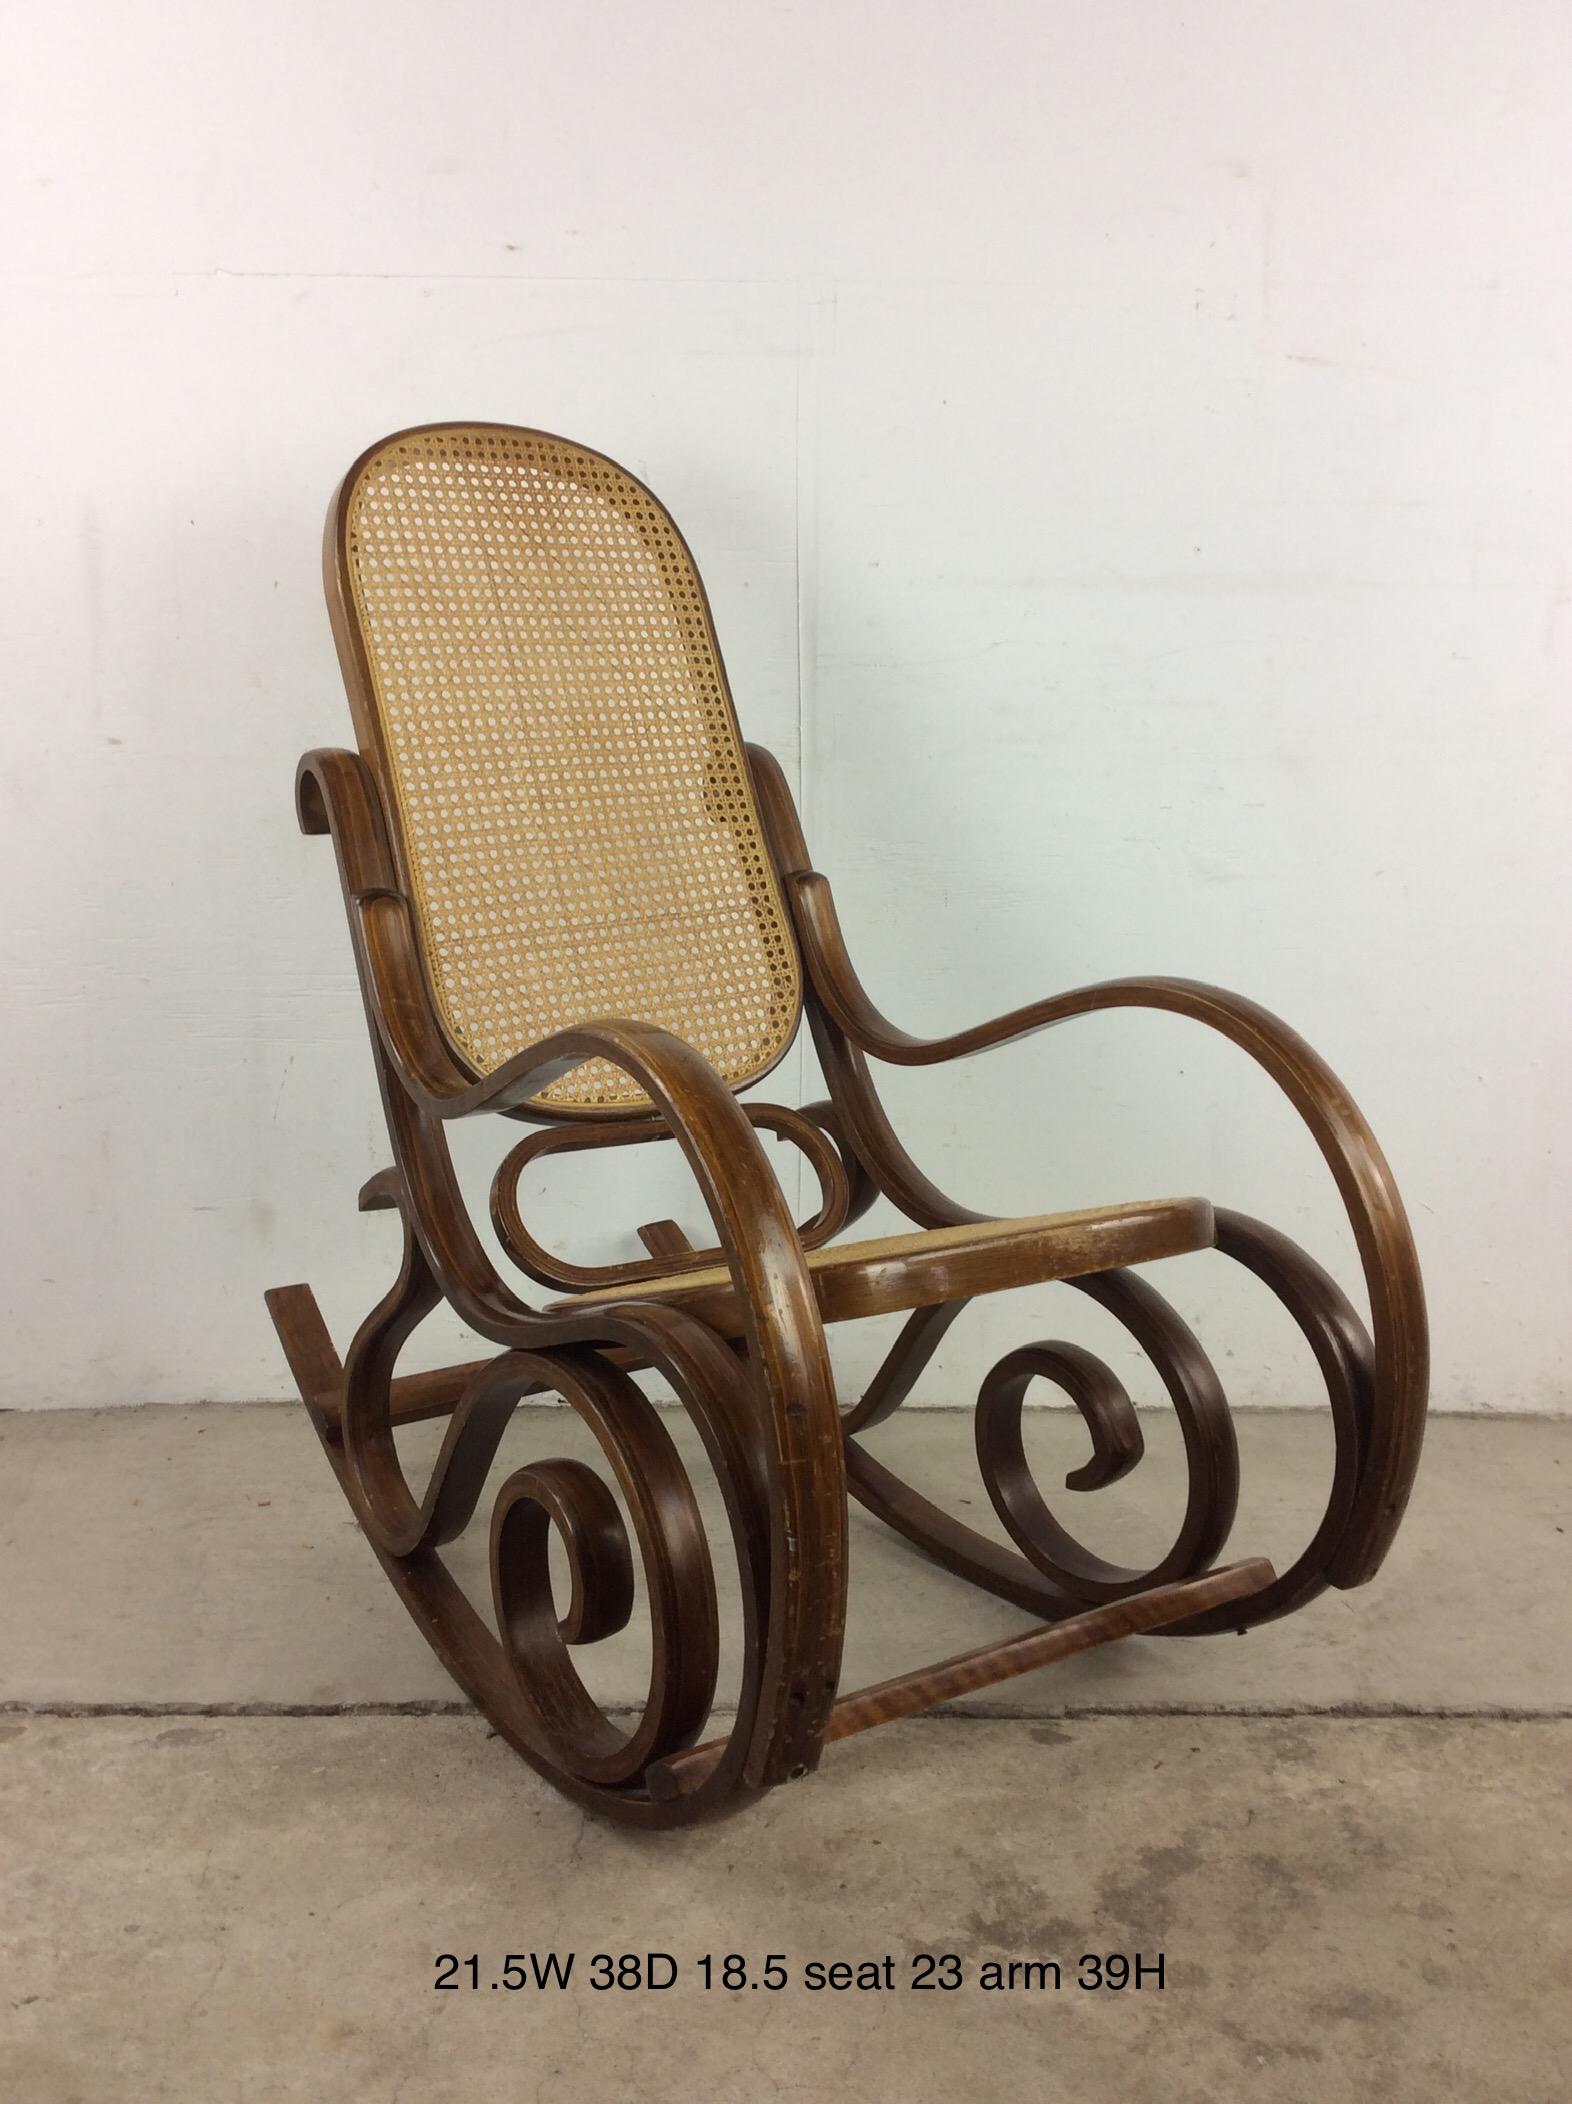 Cette chaise à bascule vintage dans le style de Thonet présente un cadre unique en bois courbé avec une assise et un dossier cannelés.u2028u2028Chaise de café et ottoman disponibles séparément.

Dimensions : 21.5w 38d 39h 23h 18.5sh

Condit : La